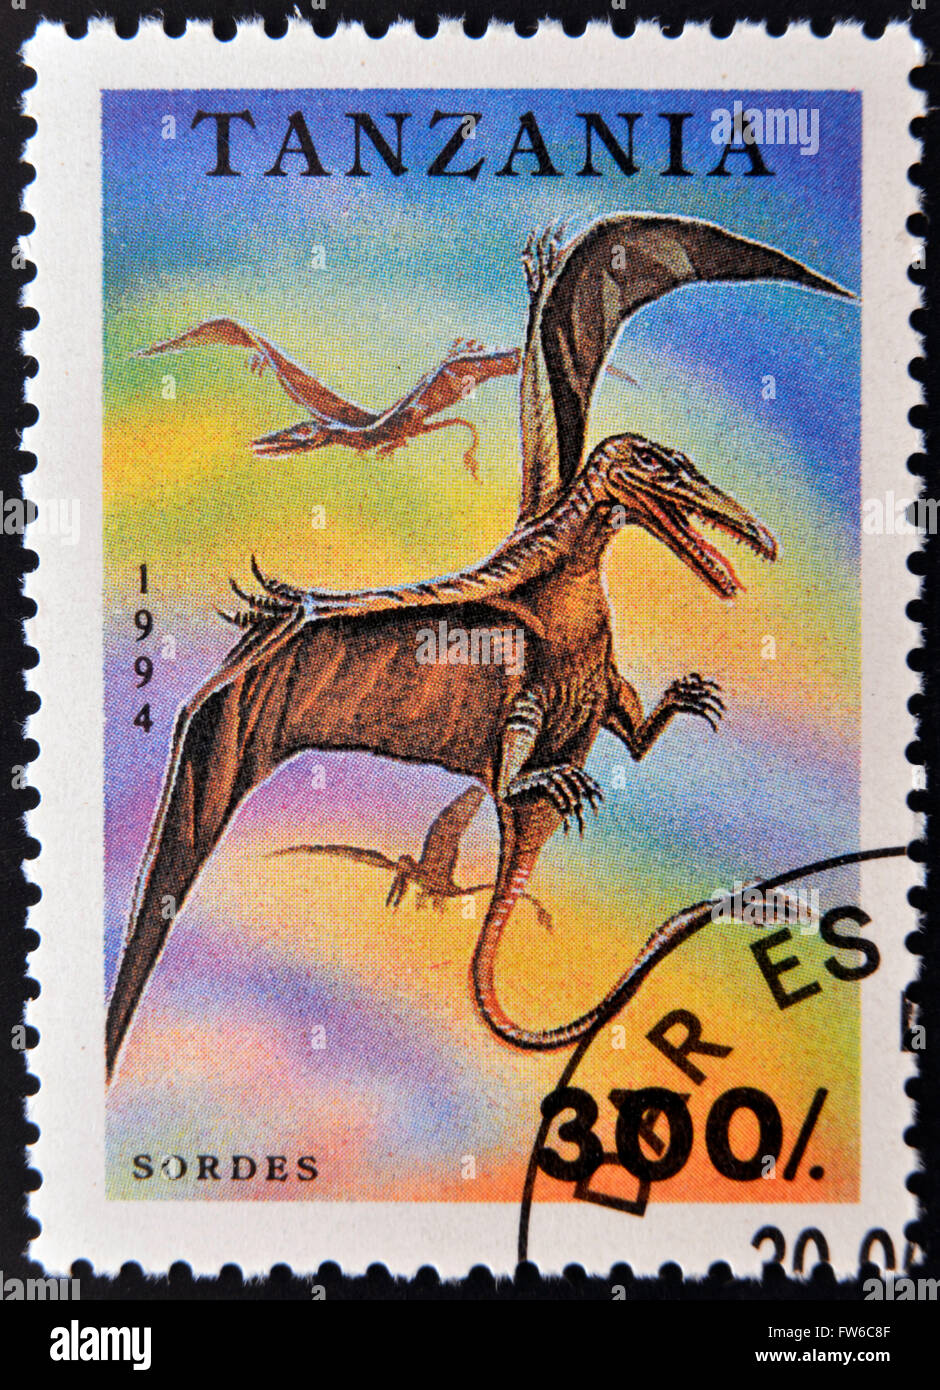 TANZANIA - CIRCA 1994: A stamp printed in Tanzania shows Sordes, circa 1994 Stock Photo